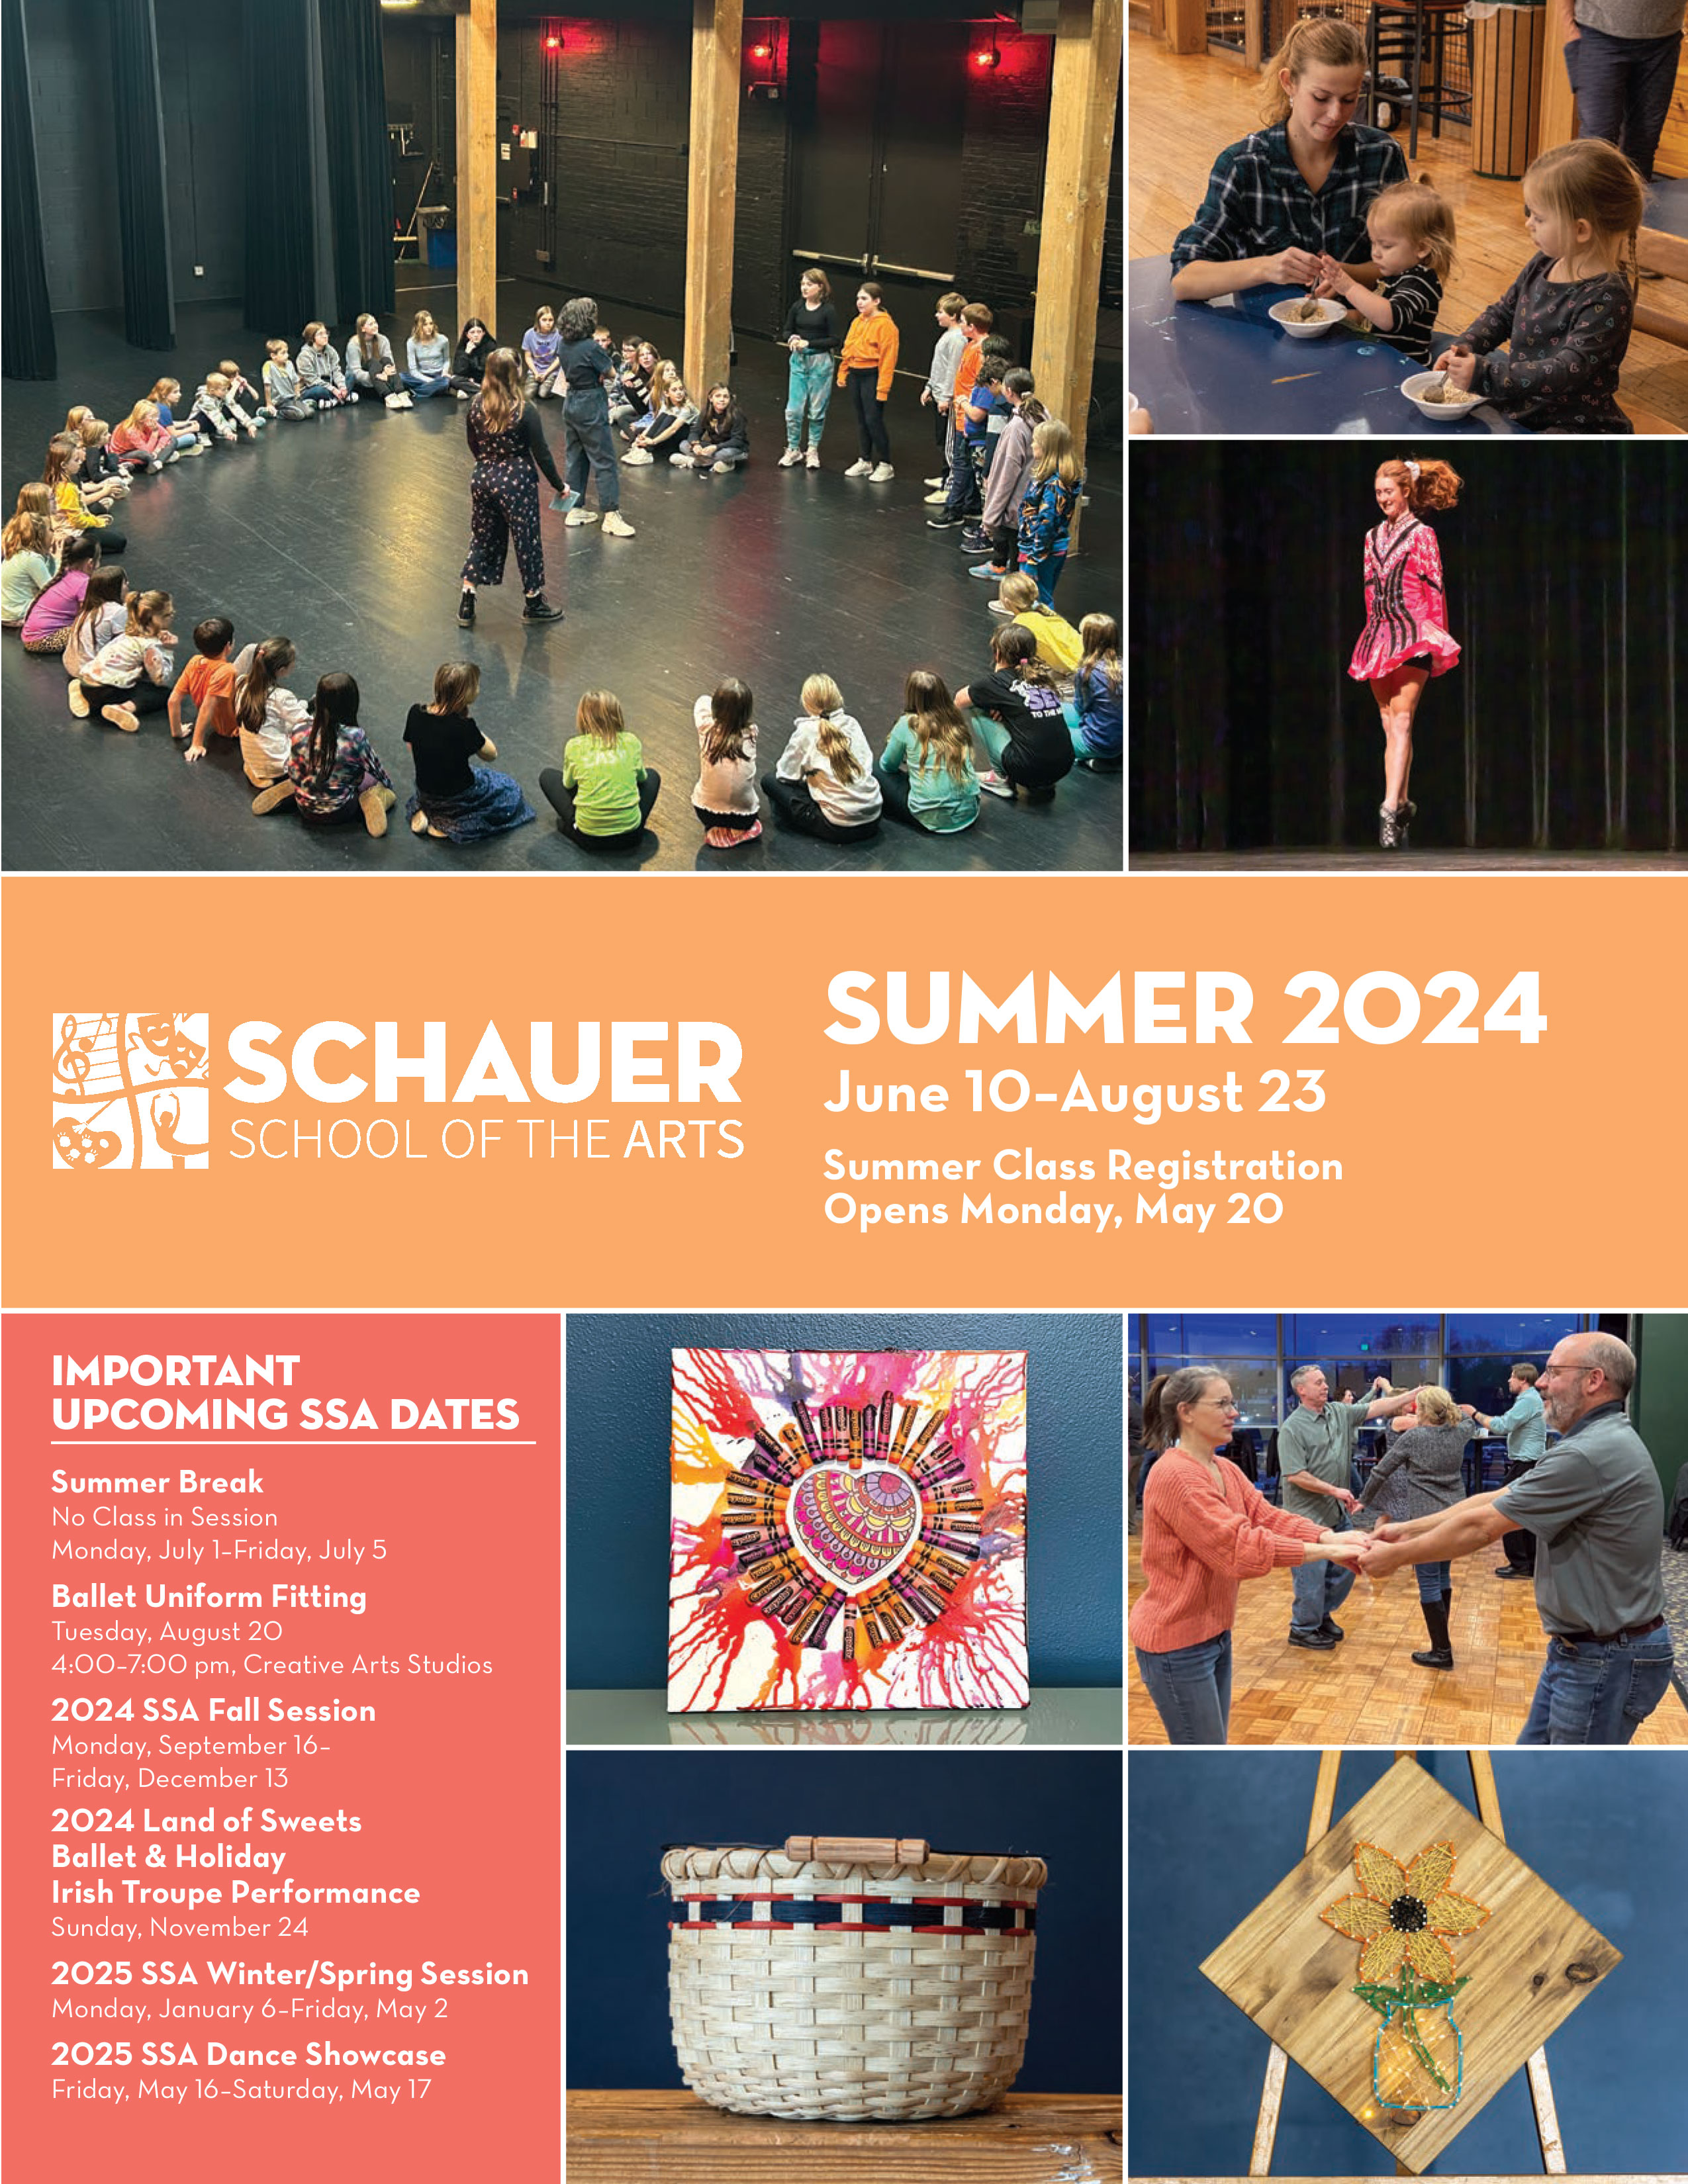 Schauer School of the Arts Summer 2024 brochure cover